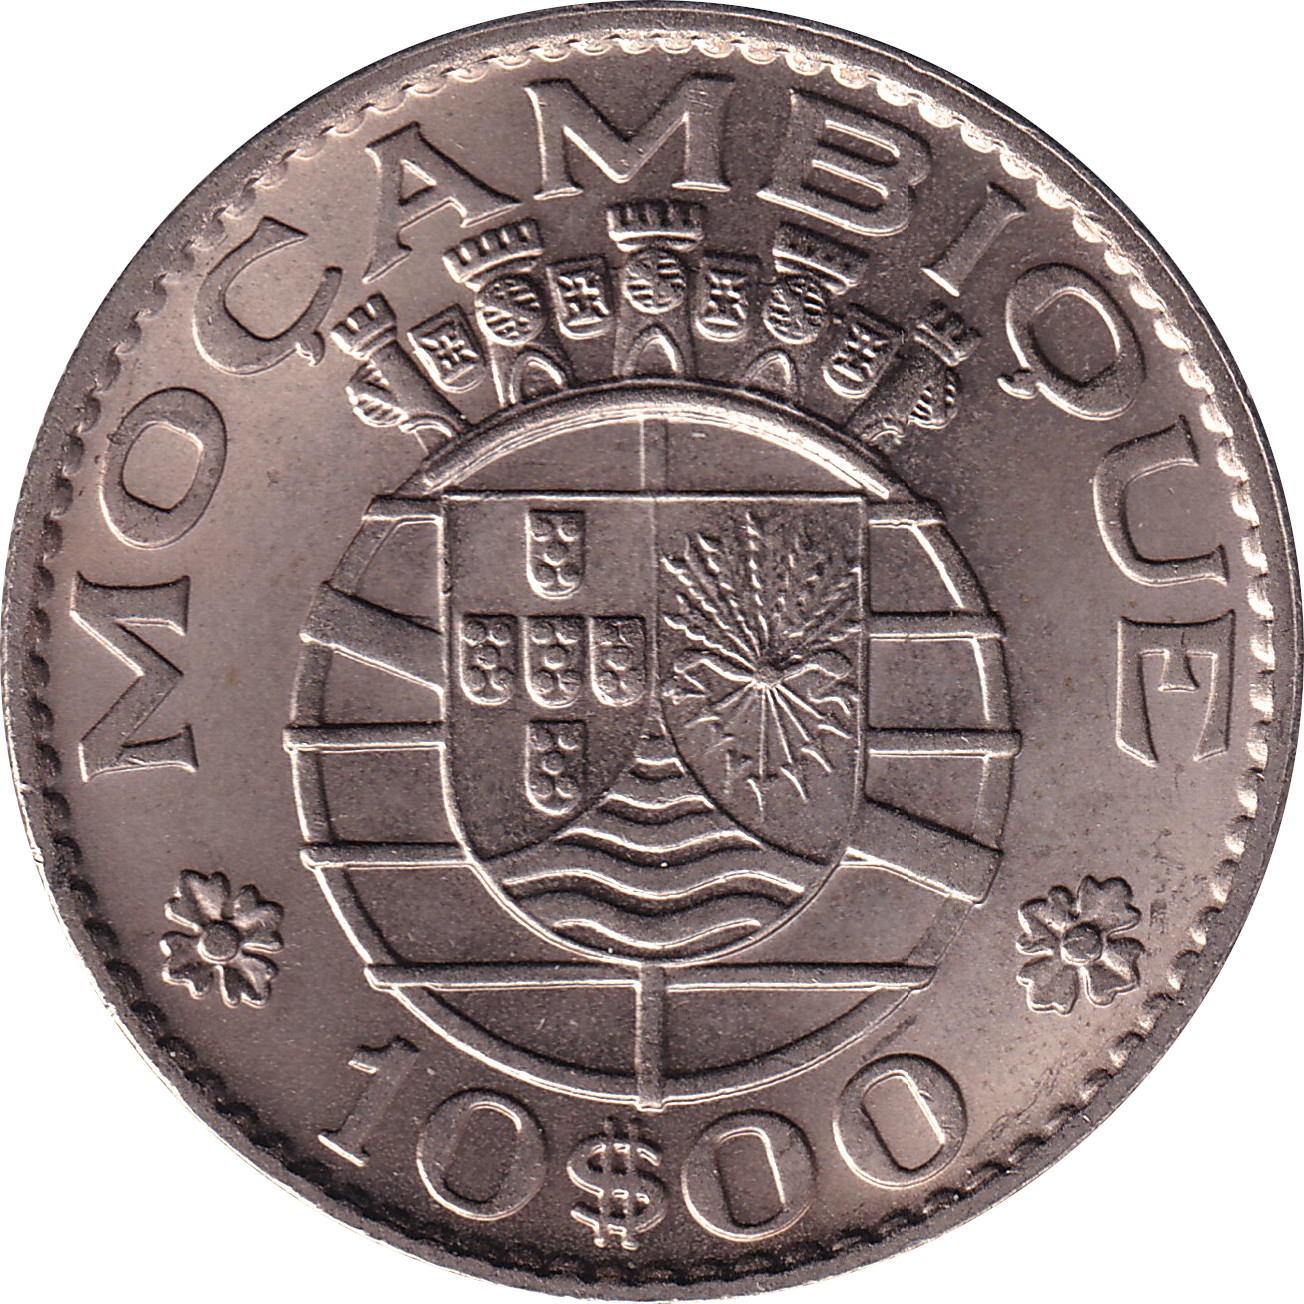 10 escudos - Mocambique - Cupronickel